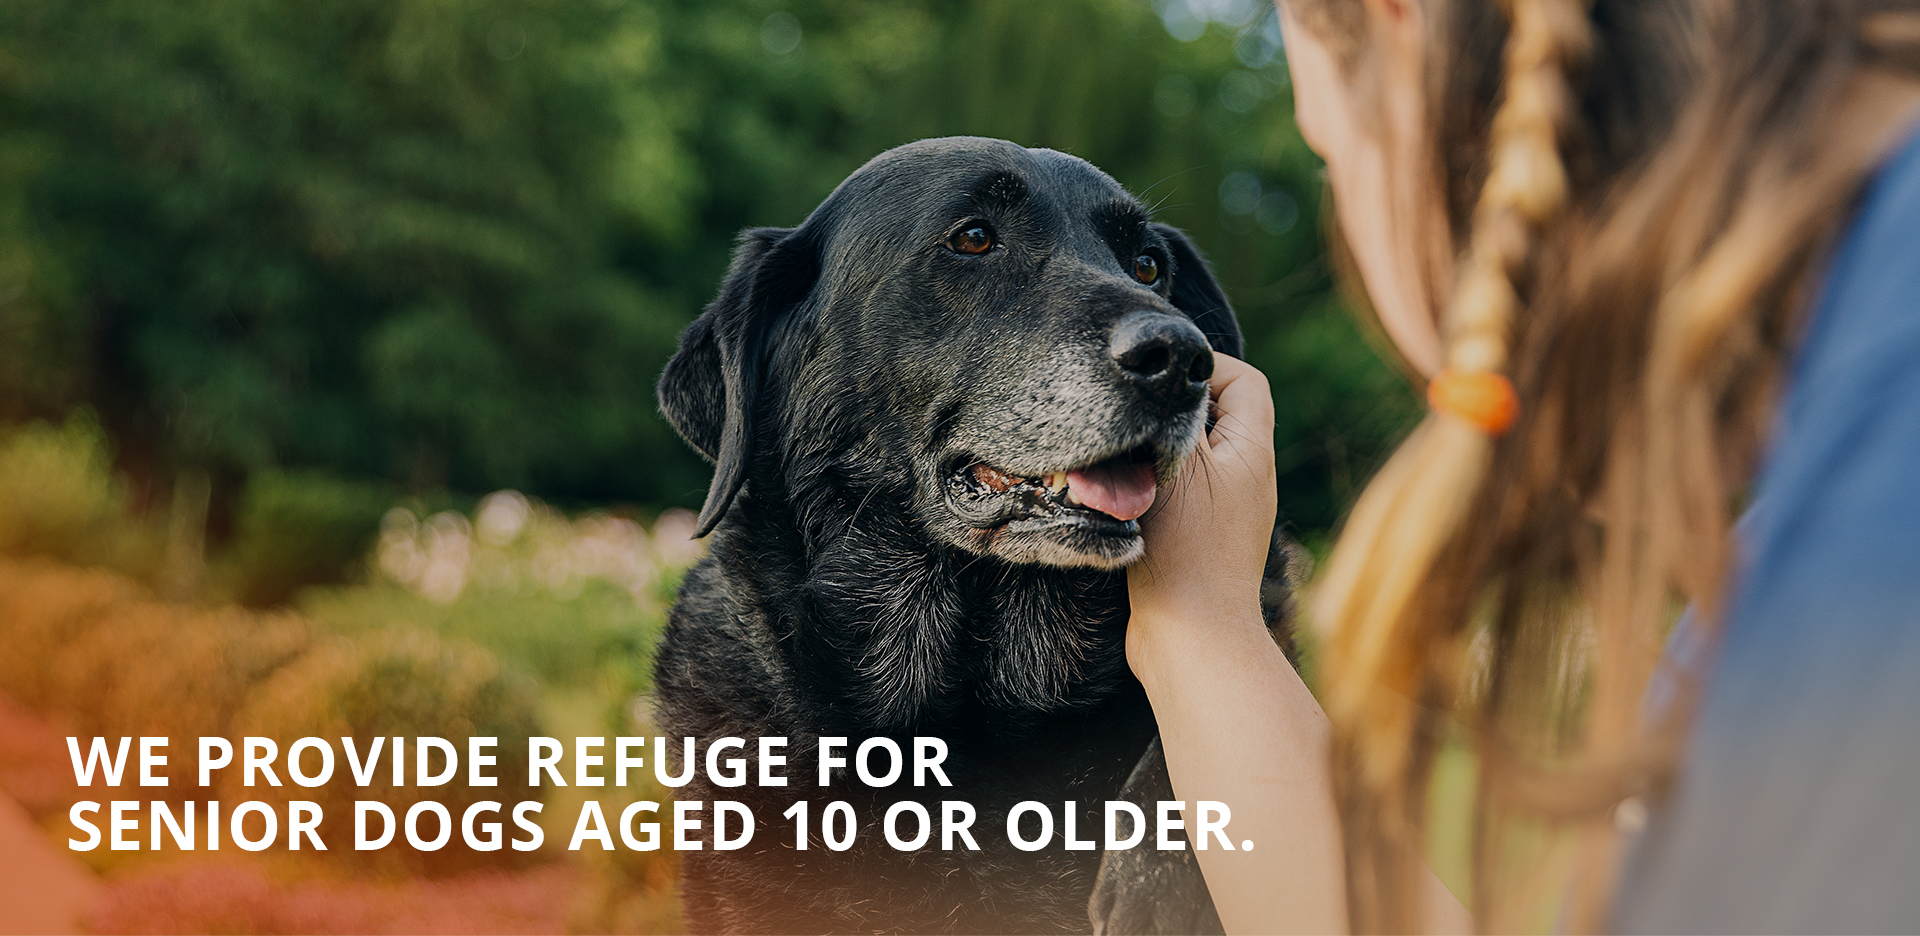 We provide refuge for senior dogs aged 10 or older.